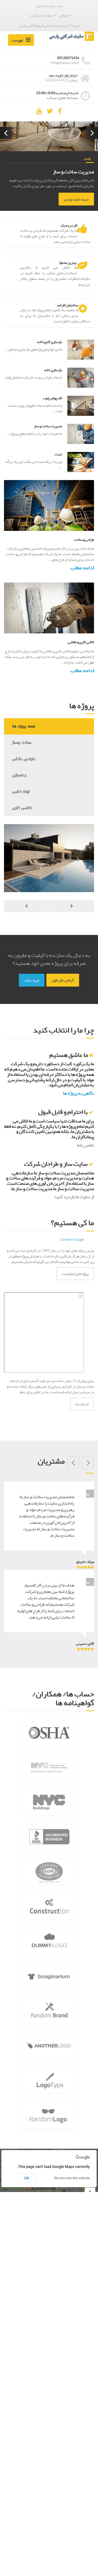 حالت موبایل سایت شرکتی پارس